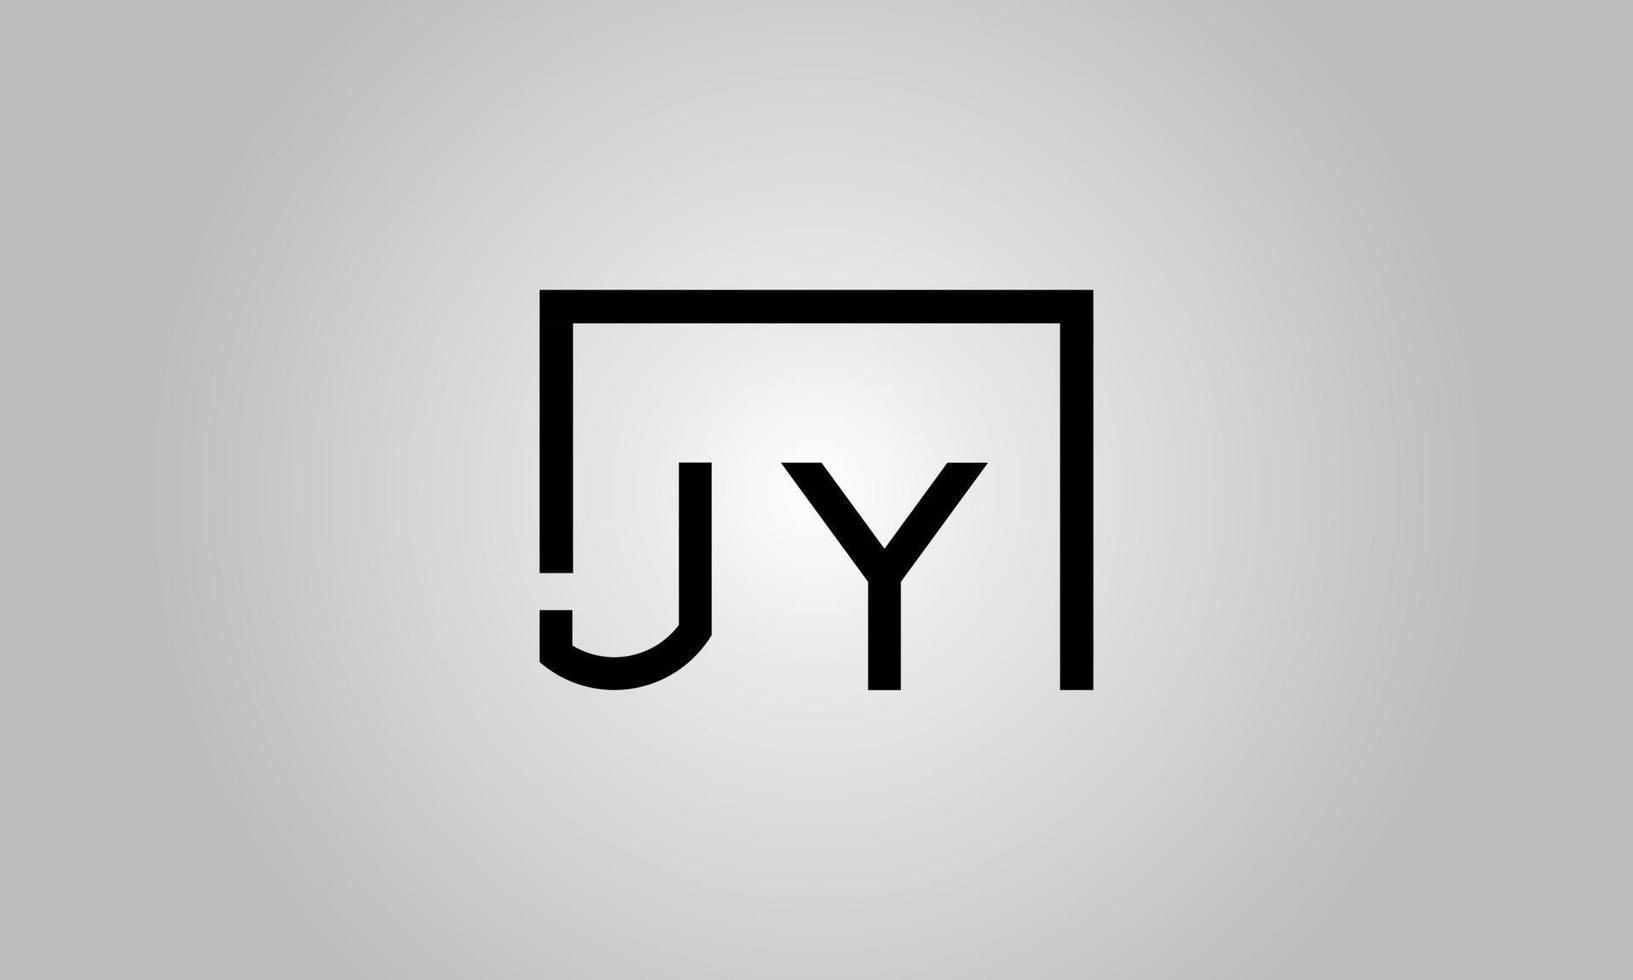 création de logo lettre jy. logo jy avec forme carrée dans le modèle de vecteur gratuit de vecteur de couleurs noires.